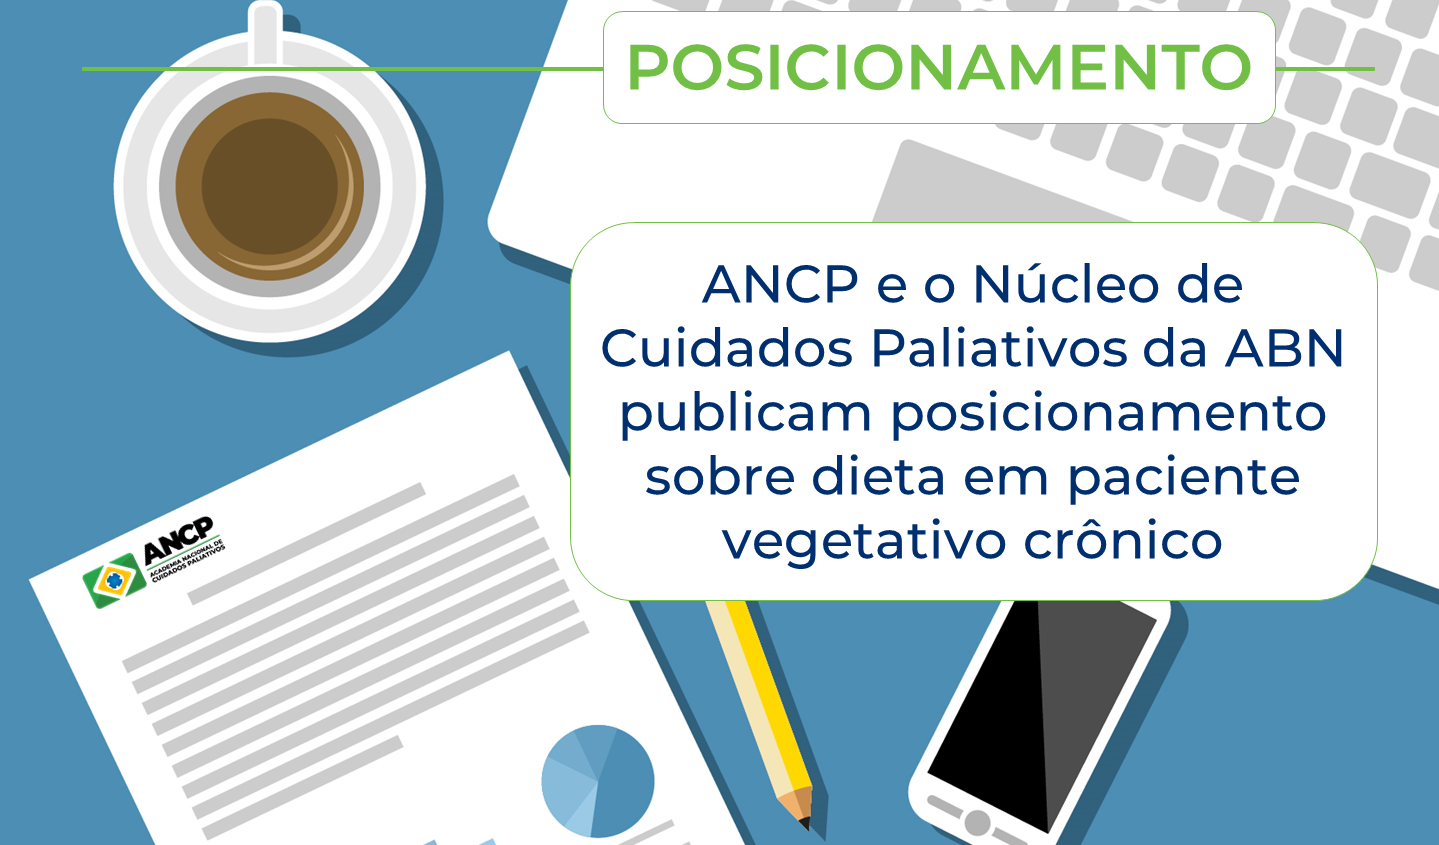 ANCP e o Núcleo de Medicina Paliativa da ABN publicam posicionamento sobre dieta em paciente vegetativo crônico